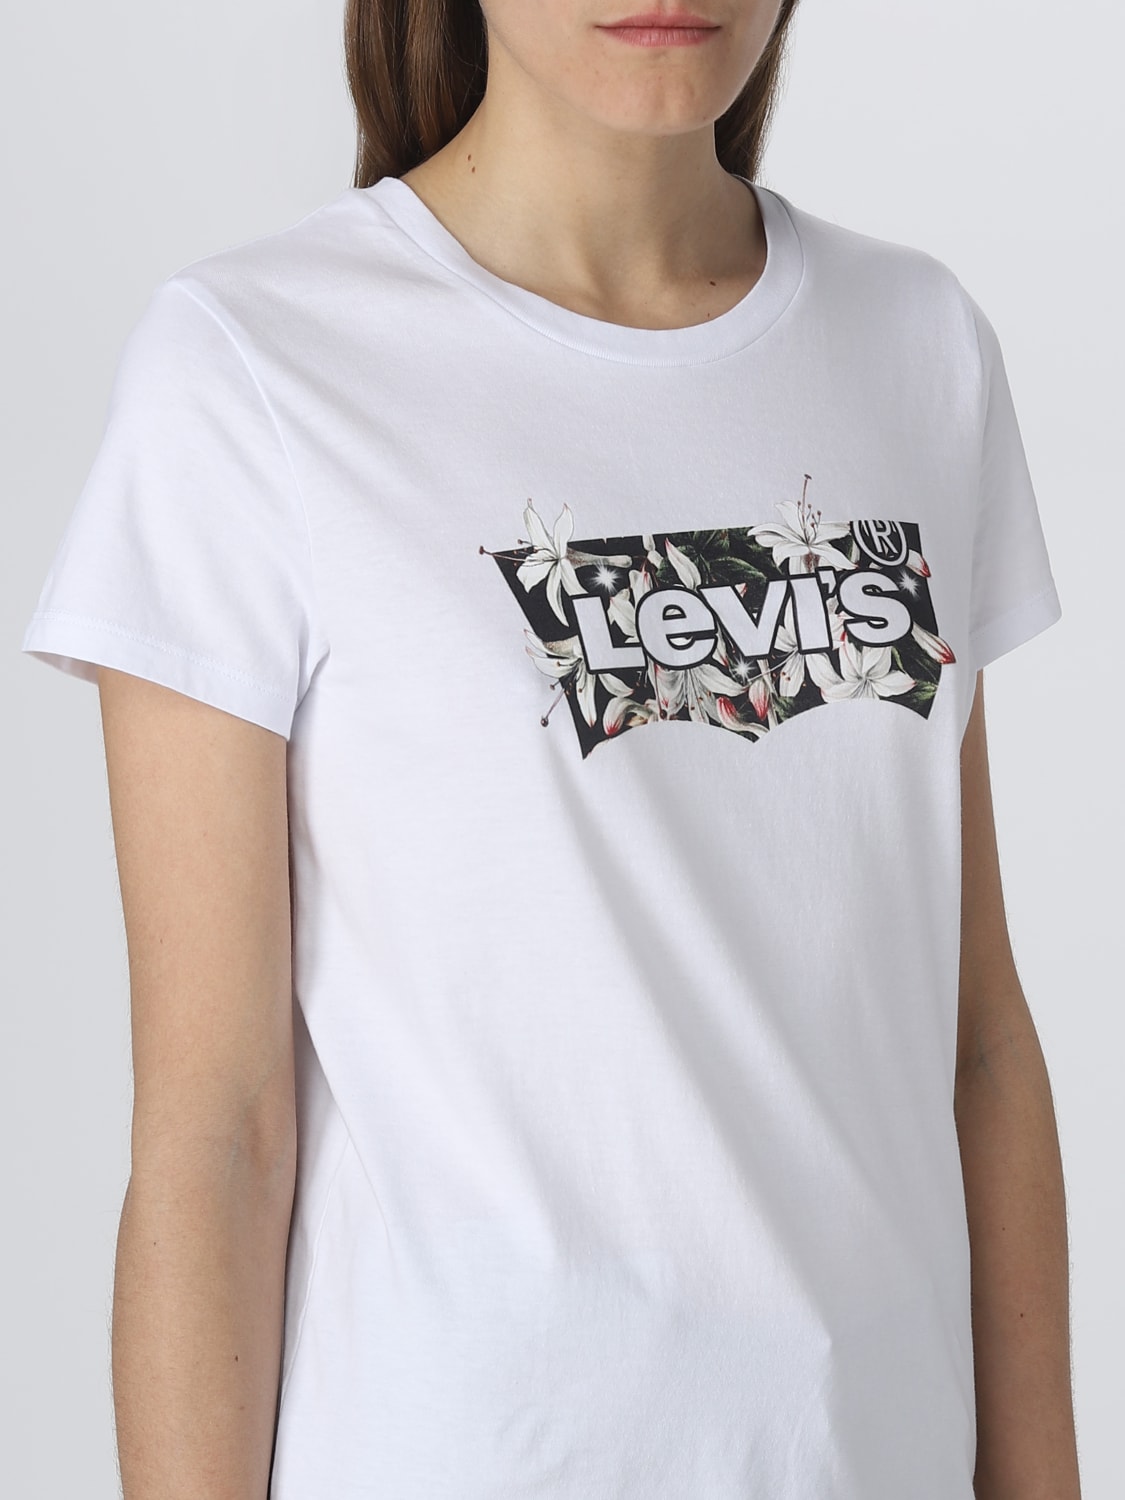 Tシャツ リーバイス: Tシャツ Levi's レディース ホワイト 2